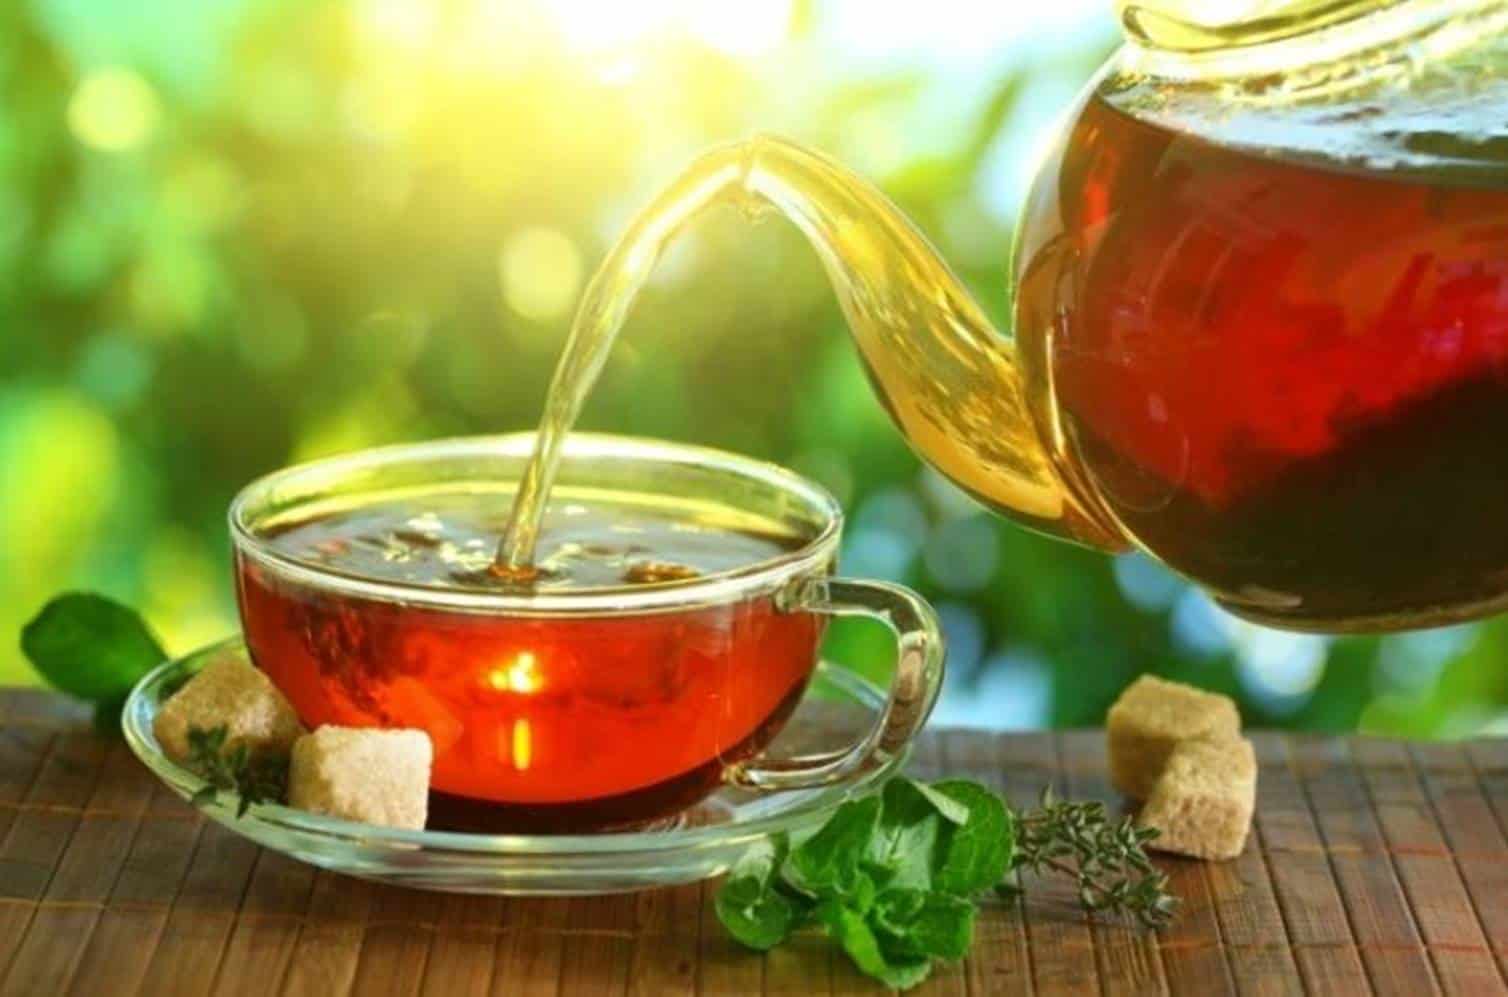 Chá de amora emagrece quase 2 kg em uma semana; veja como preparar